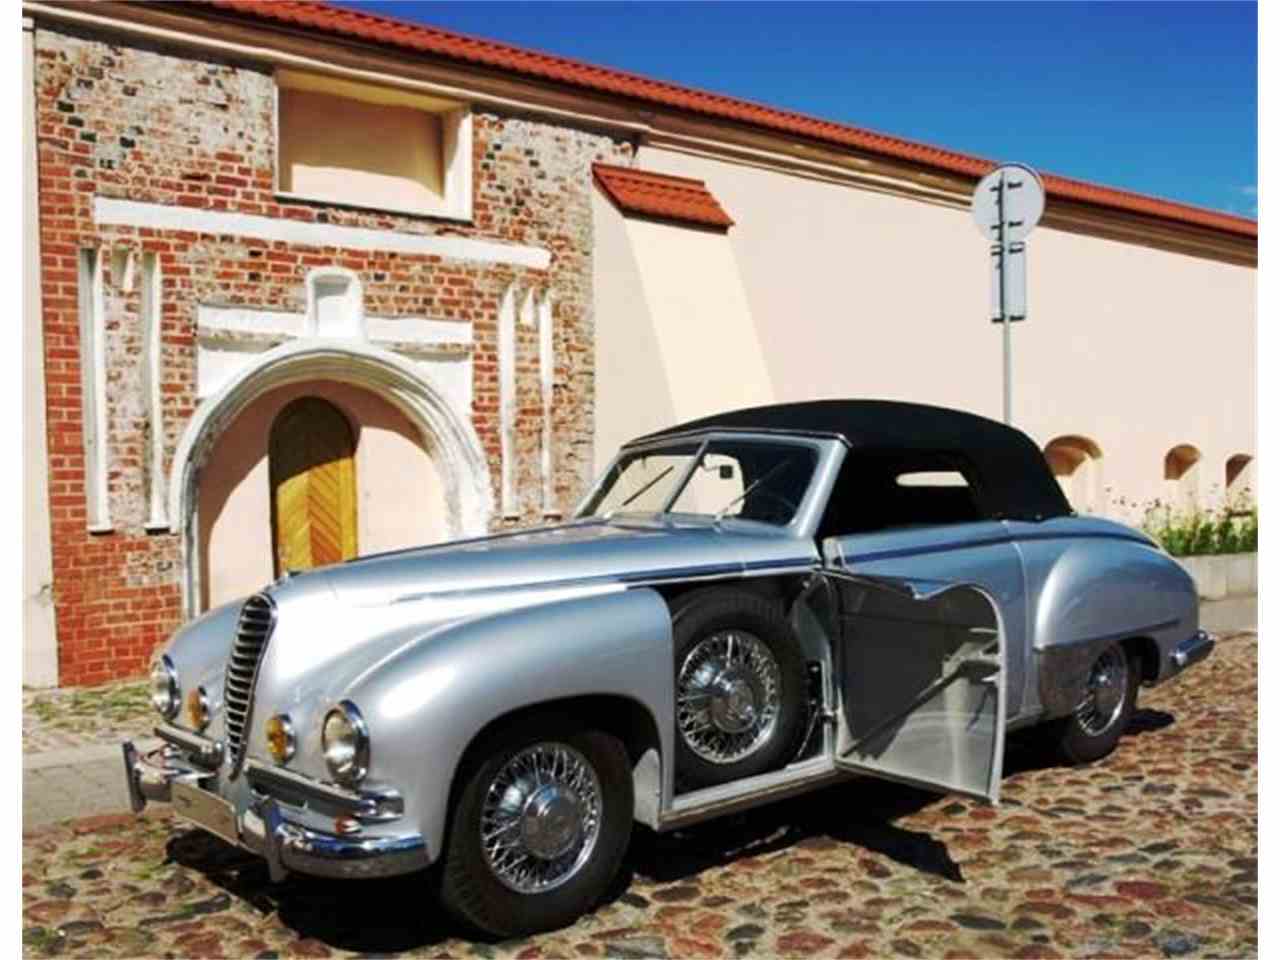 1940 Mercedes Benz HD wallpapers, Desktop wallpaper - most viewed